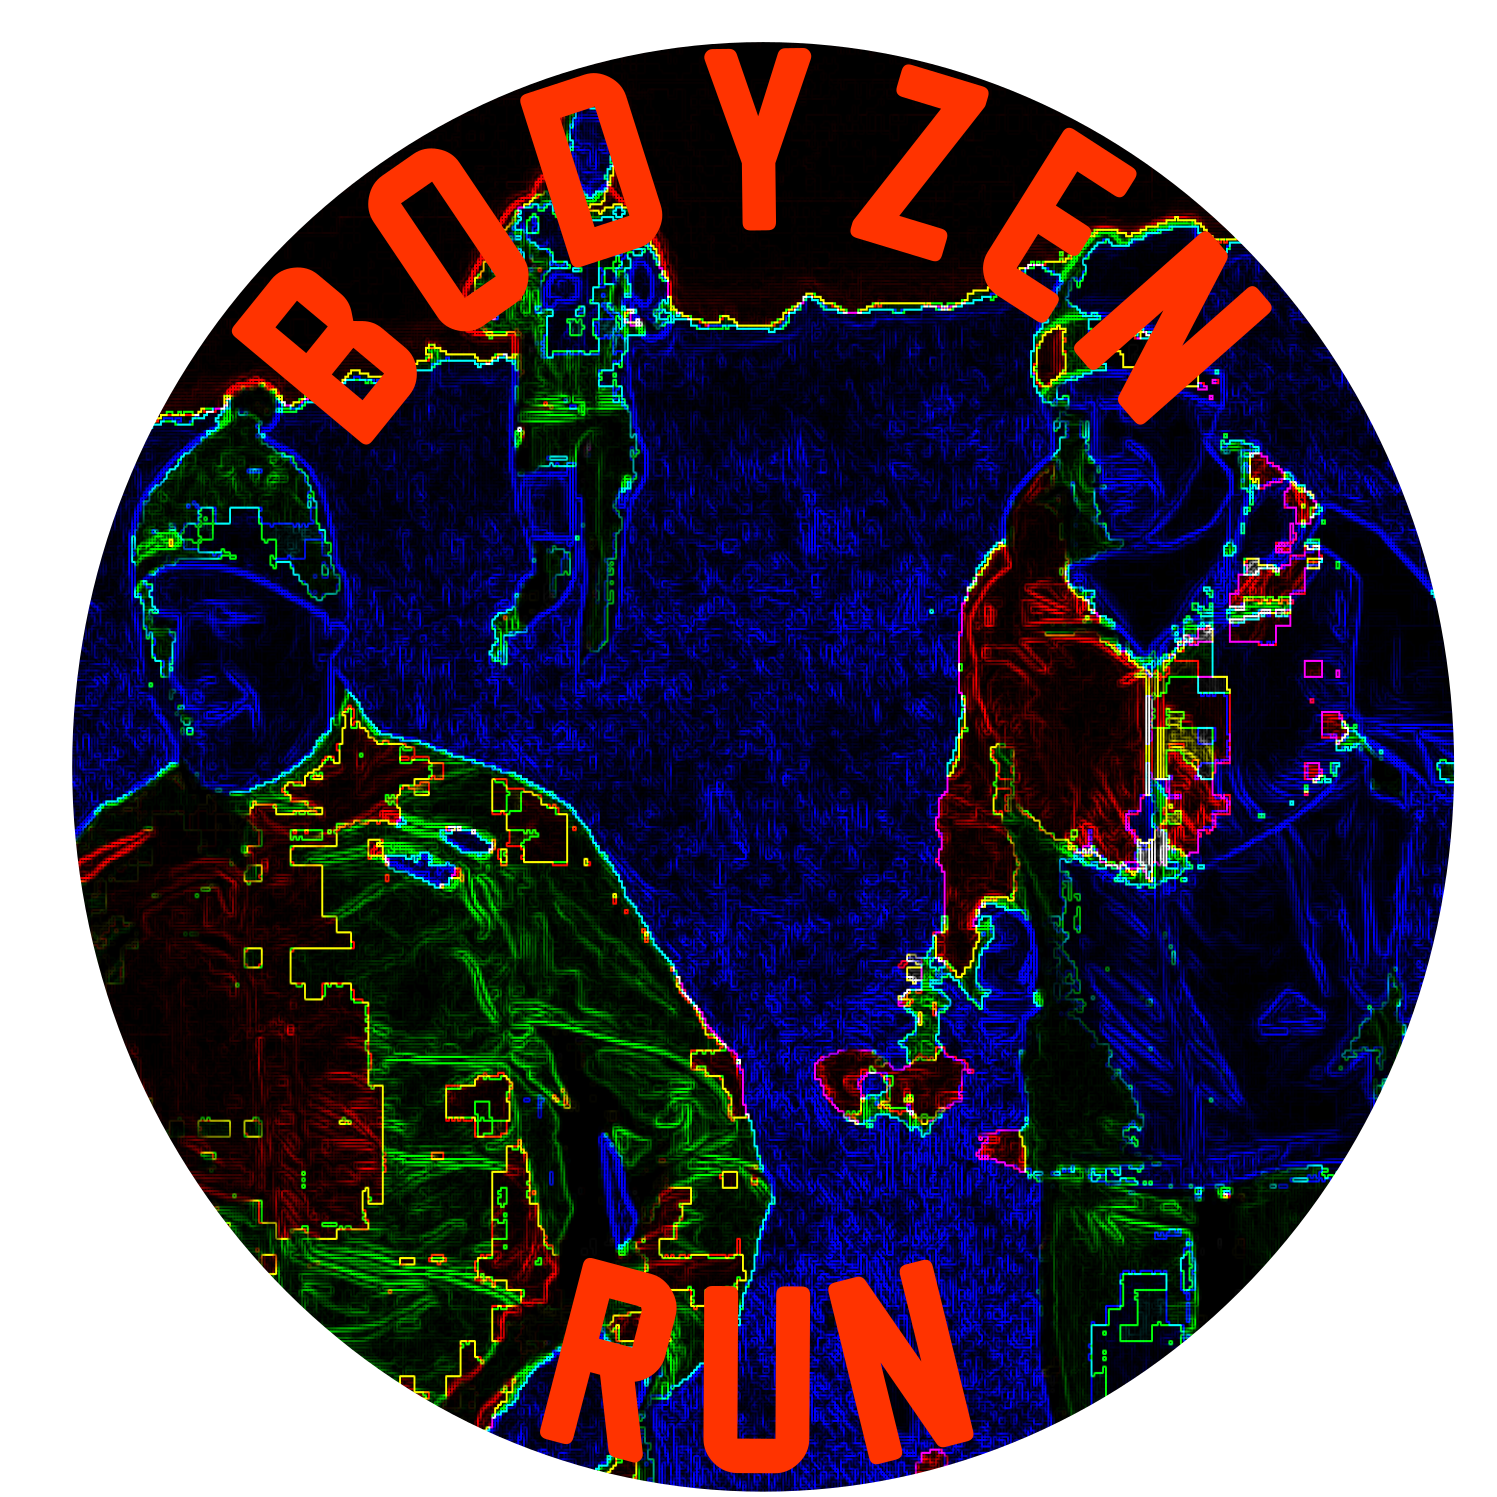 Bodyzen run